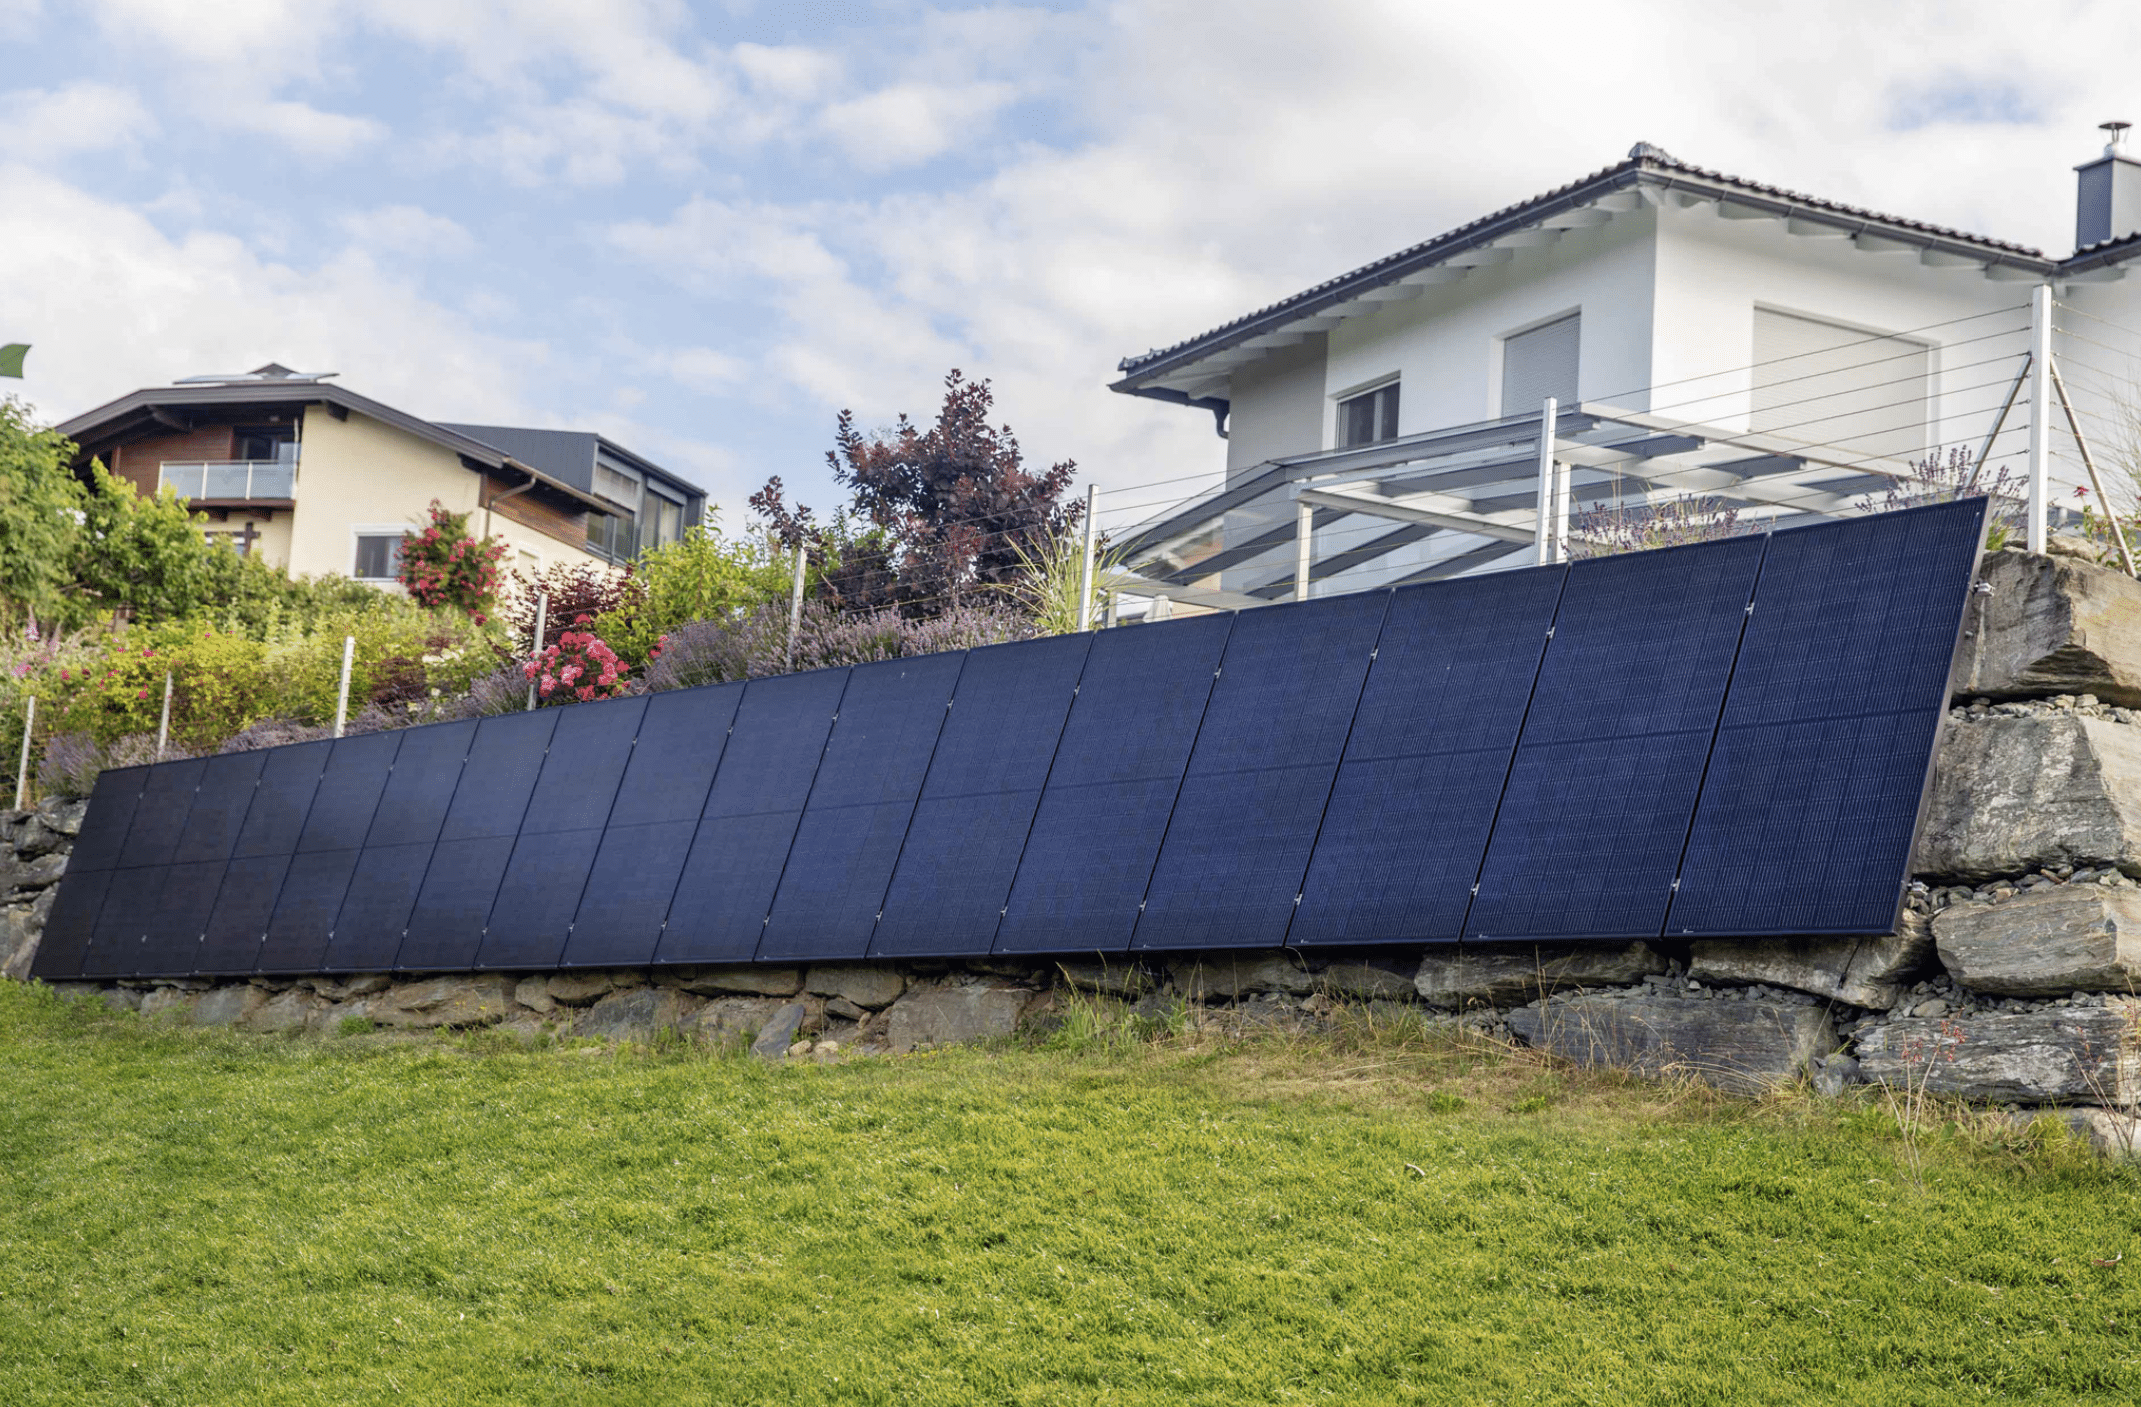 SONNENKRAFT präsentiert eine Photovoltaikanlage, welche an einer Steinmauer befestigt wurde um Platz im Garten zu sparen.